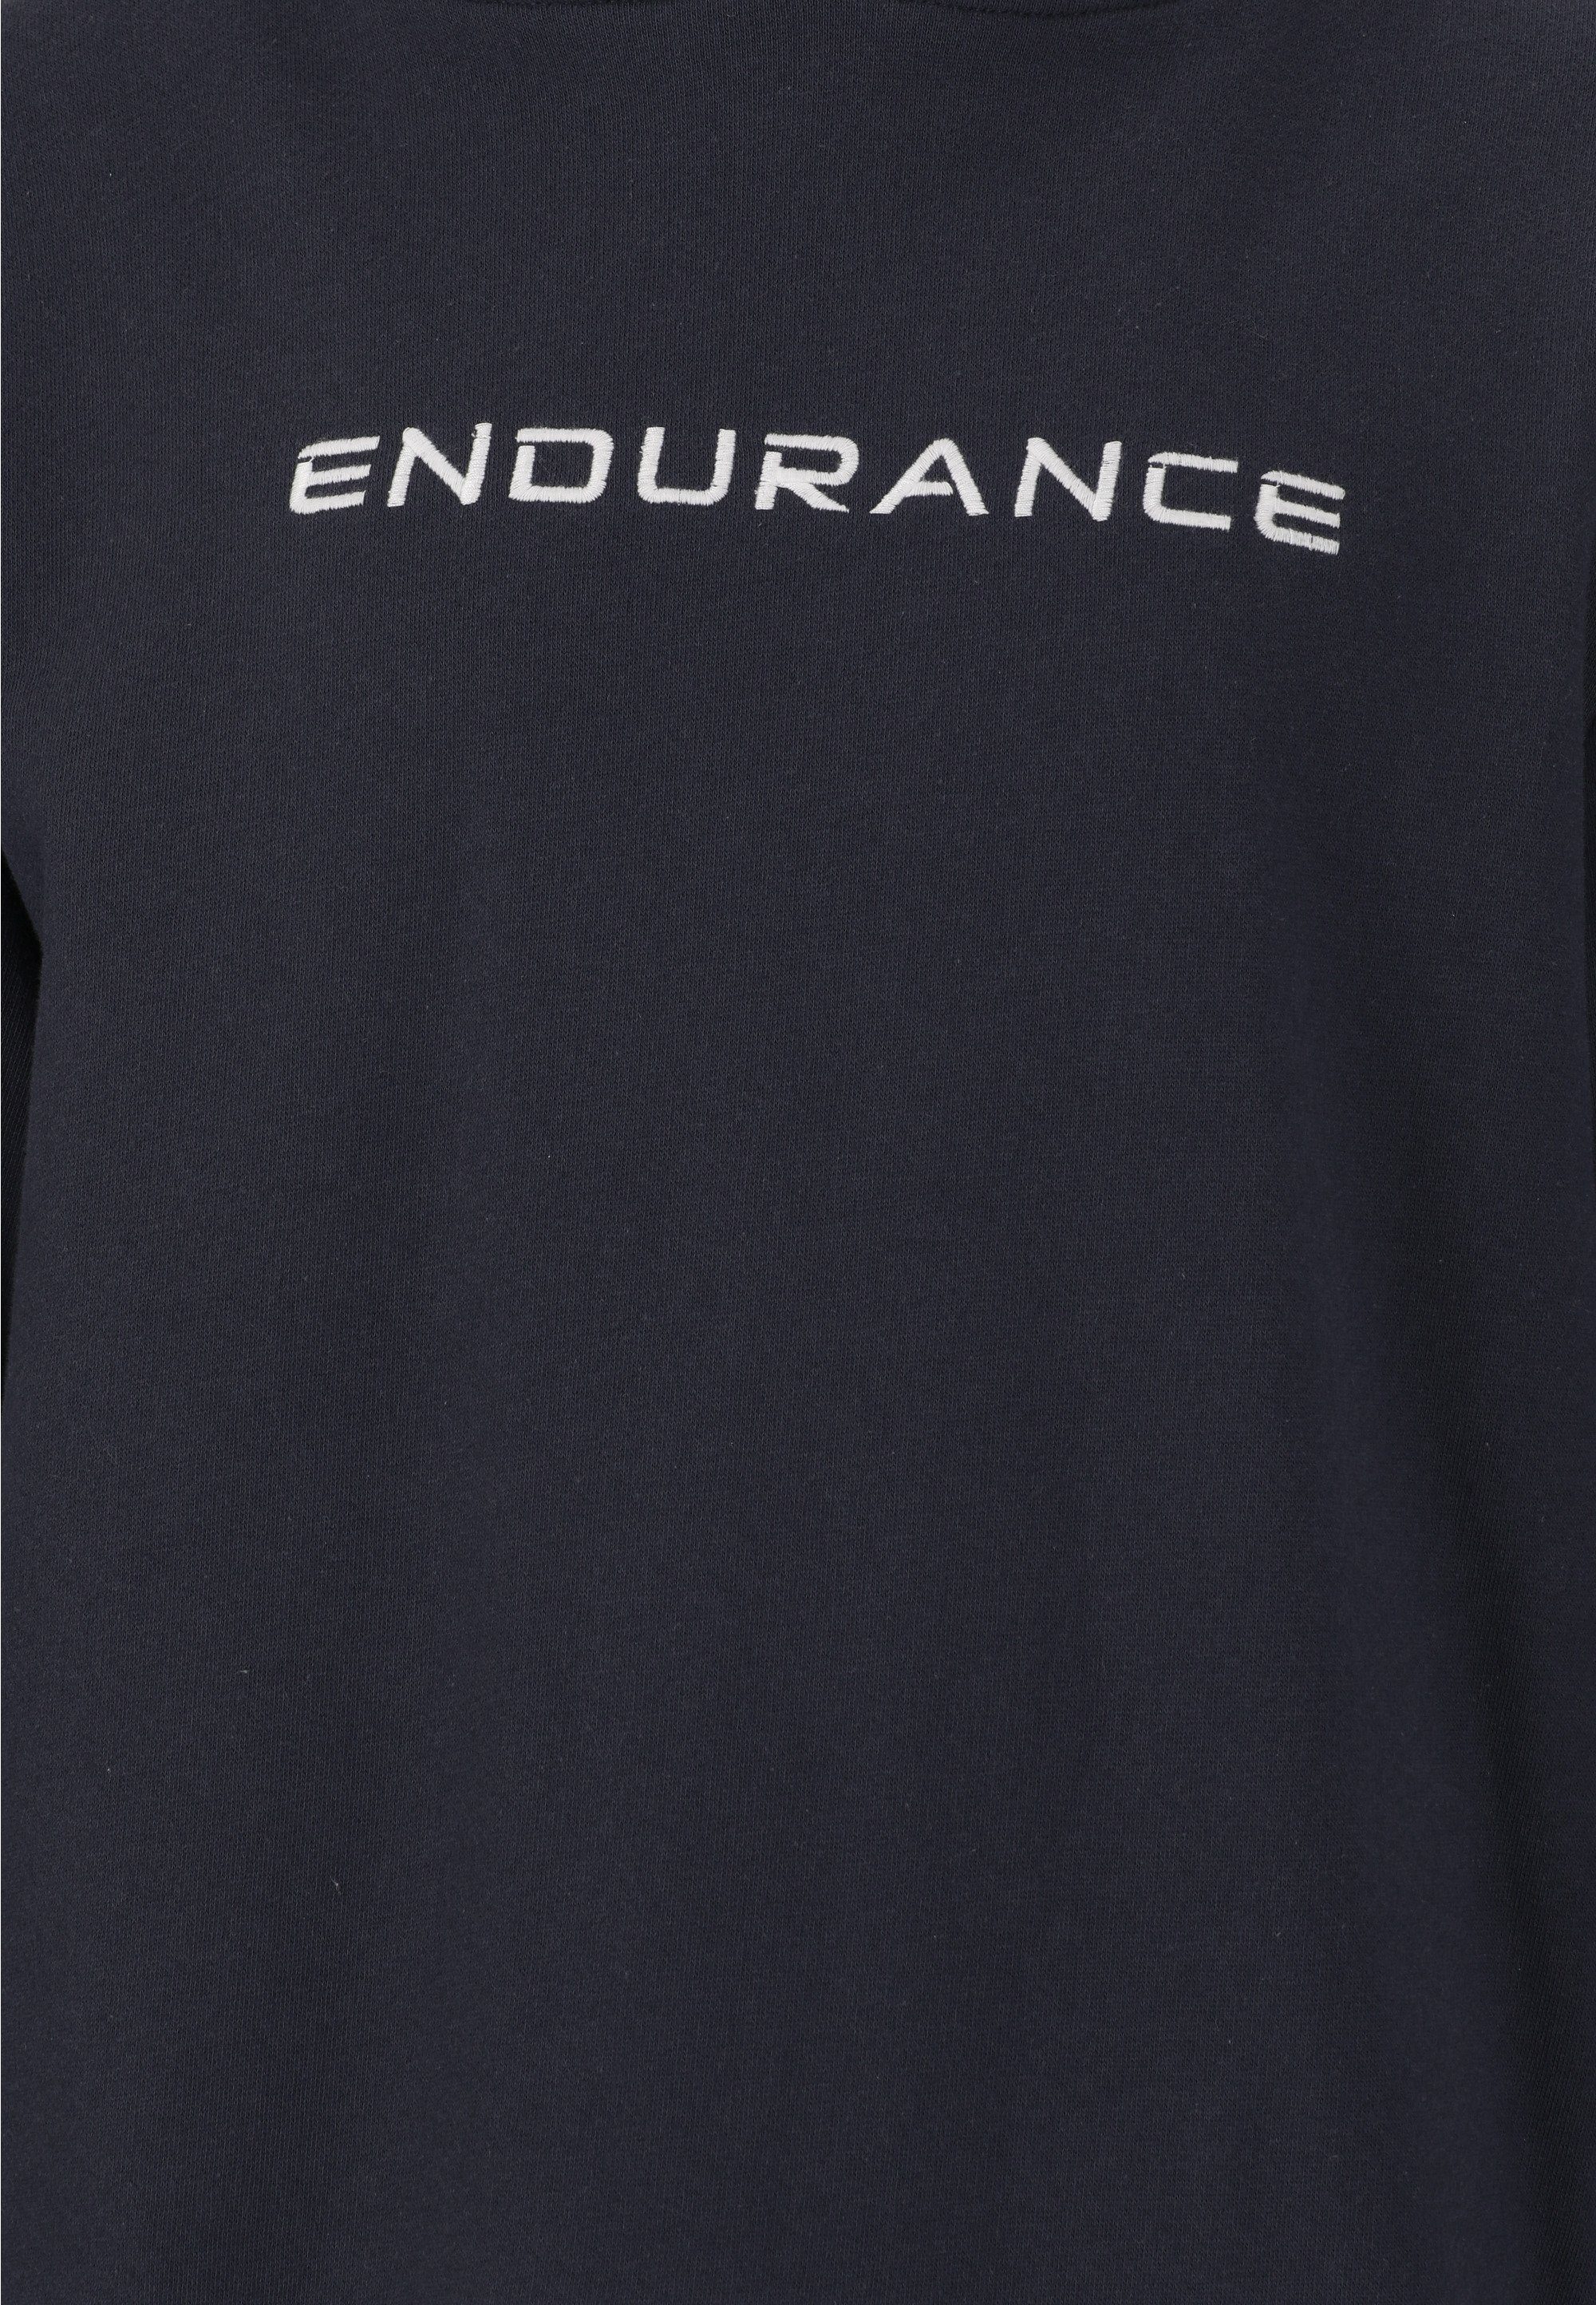 ENDURANCE Sweatshirt Glakrum mit sportlichem Markenprint